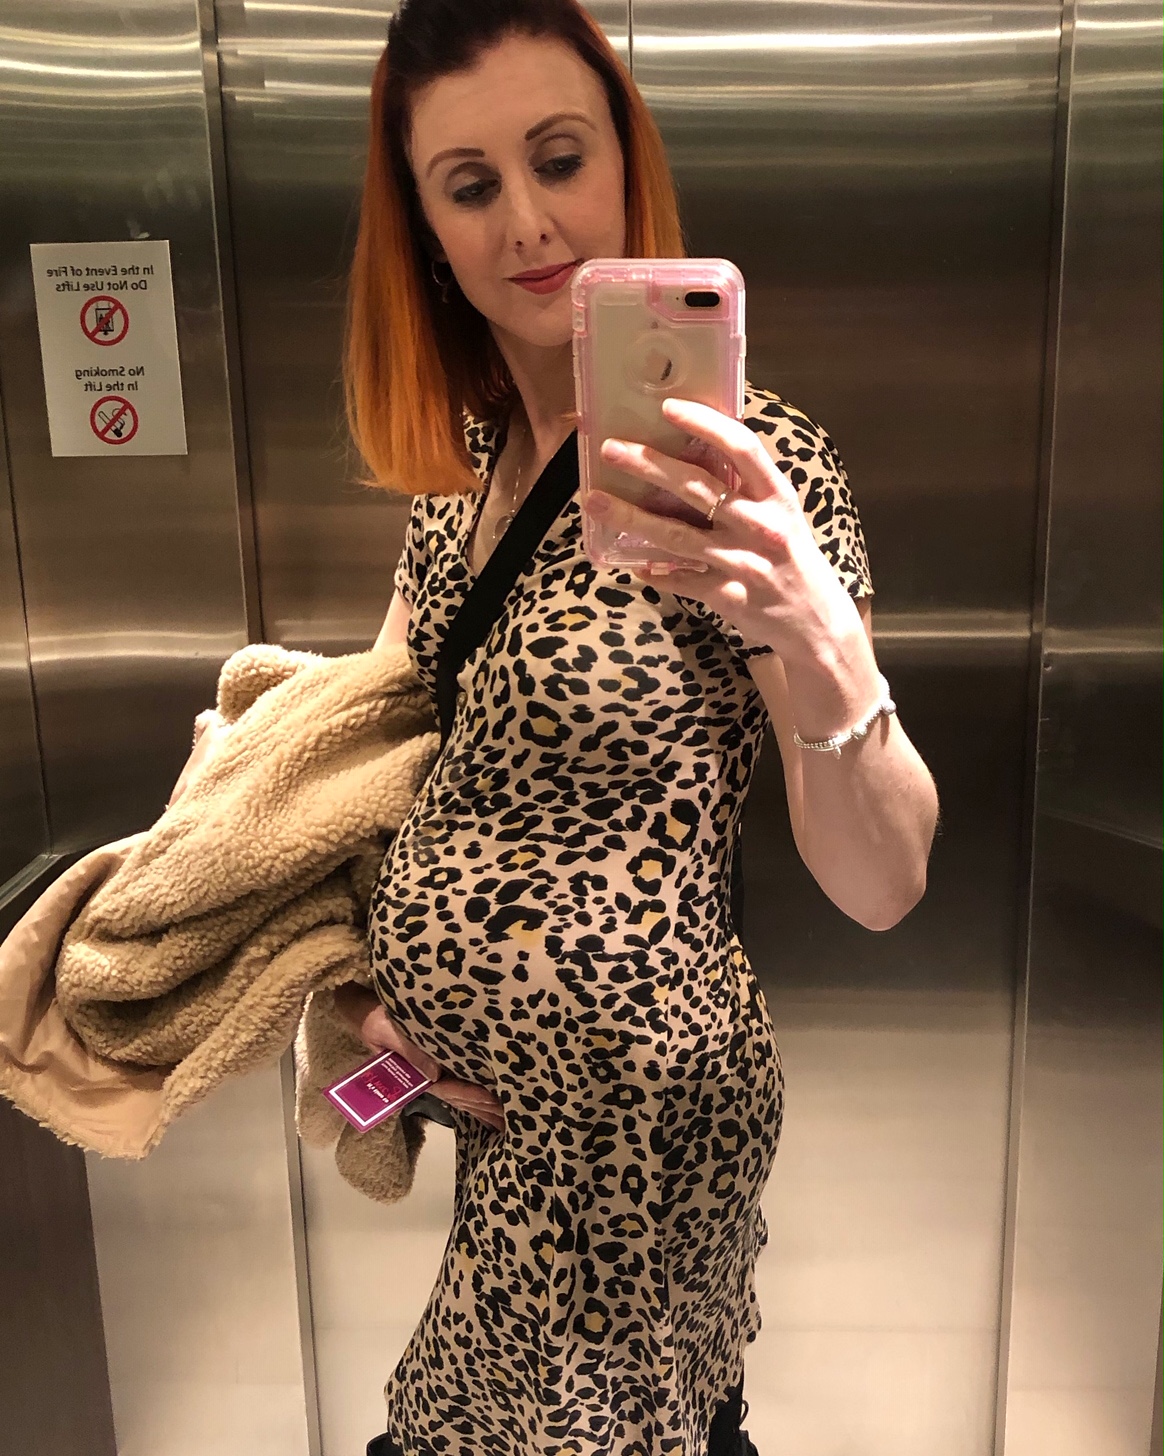 28 weeks pregnant